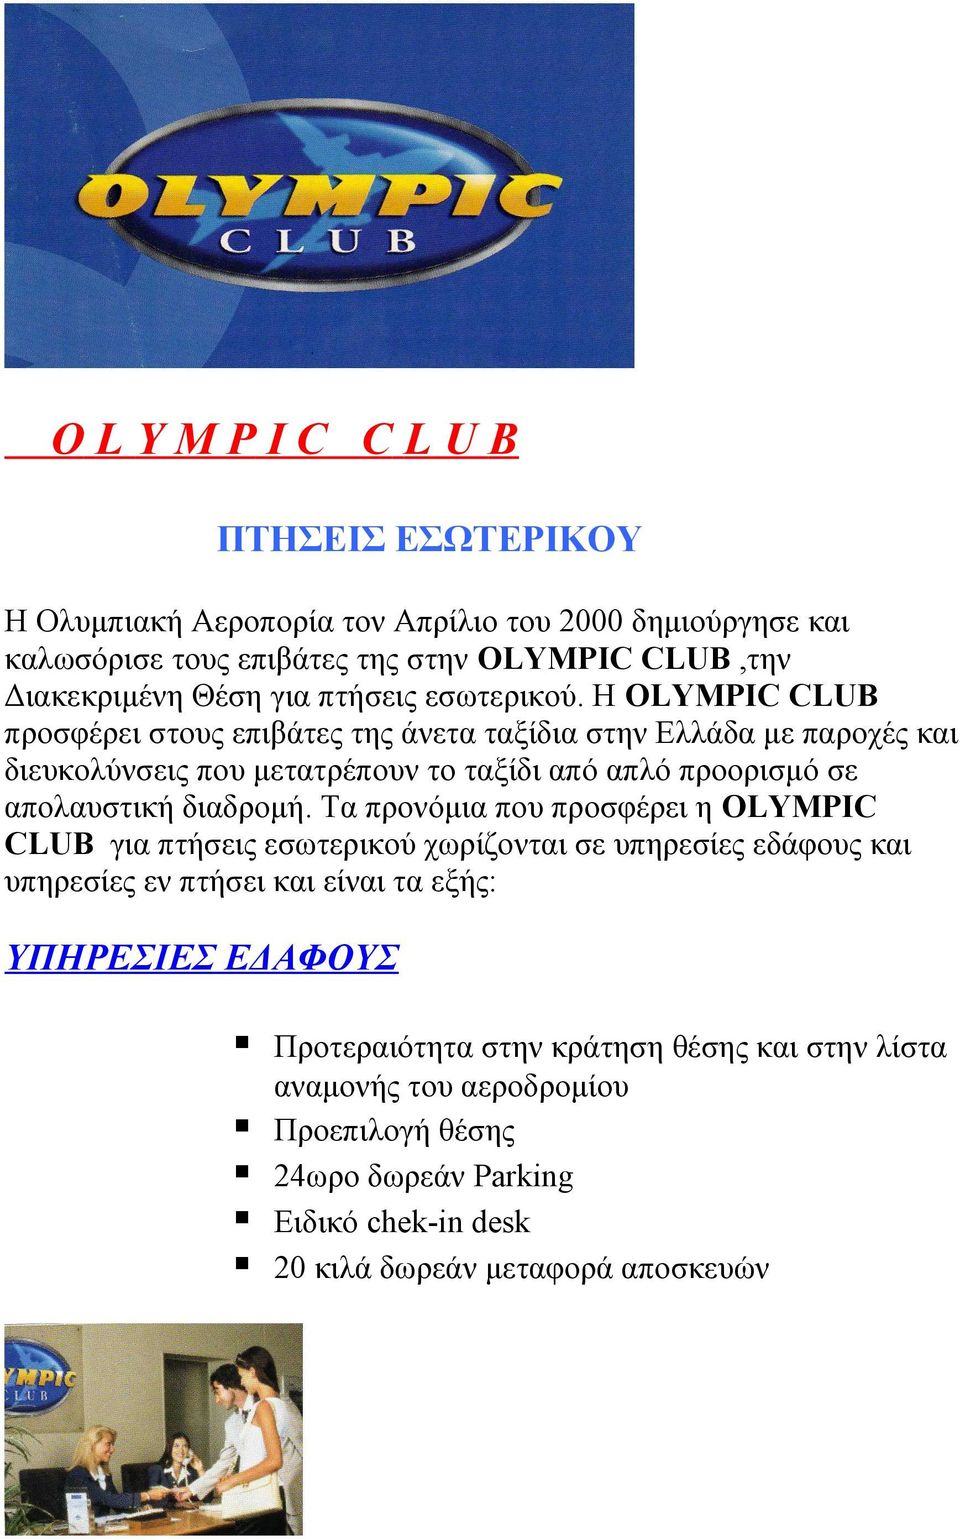 Η OLYMPIC CLUB προσφέρει στους επιβάτες της άνετα ταξίδια στην Ελλάδα με παροχές και διευκολύνσεις που μετατρέπουν το ταξίδι από απλό προορισμό σε απολαυστική διαδρομή.